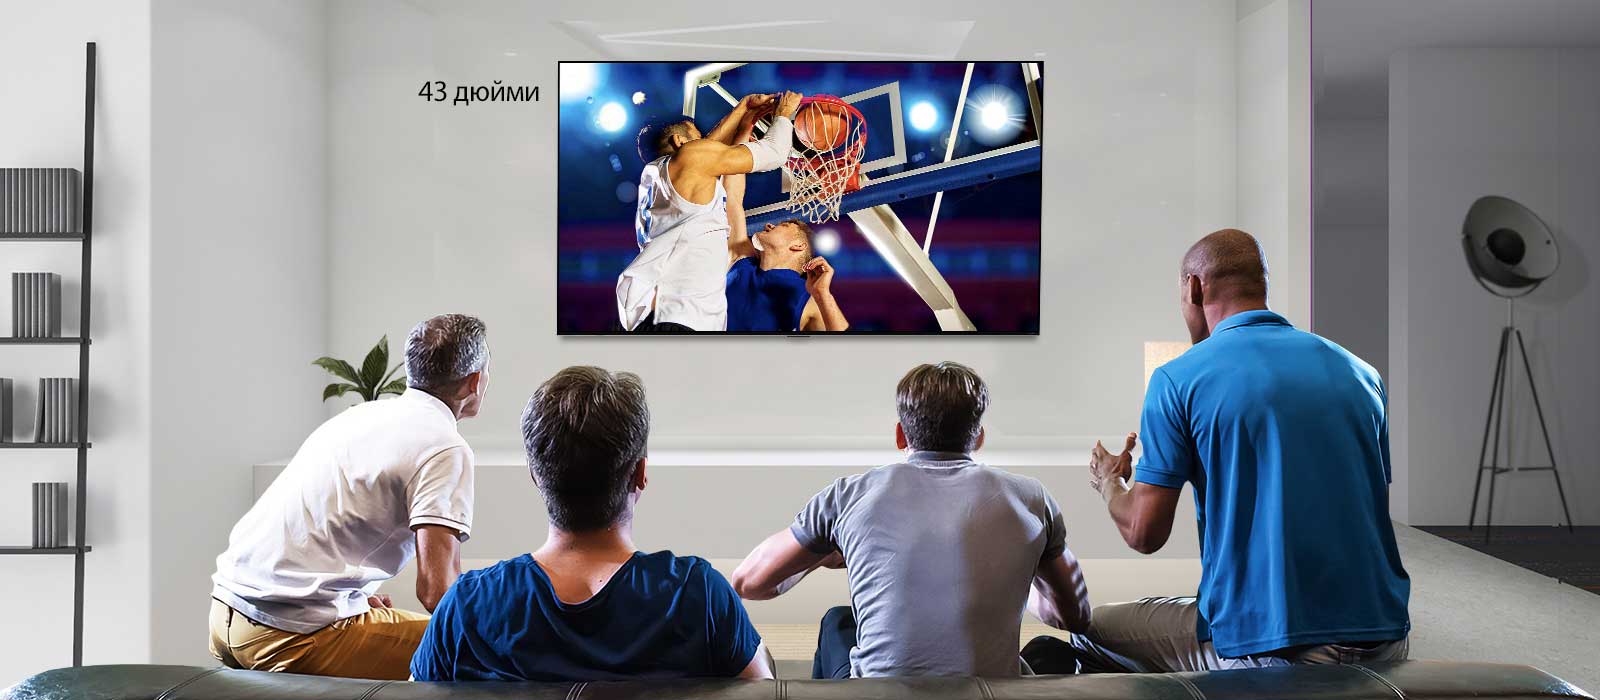 Четверо чоловіків дивляться баскетбольний матч на телевізорі, закріпленому на стіні (вид ззаду). Прокручуючи зображення зліва направо, можна побачити різницю у розмірах між 43-дюймовим і 86-дюймовим екраном.